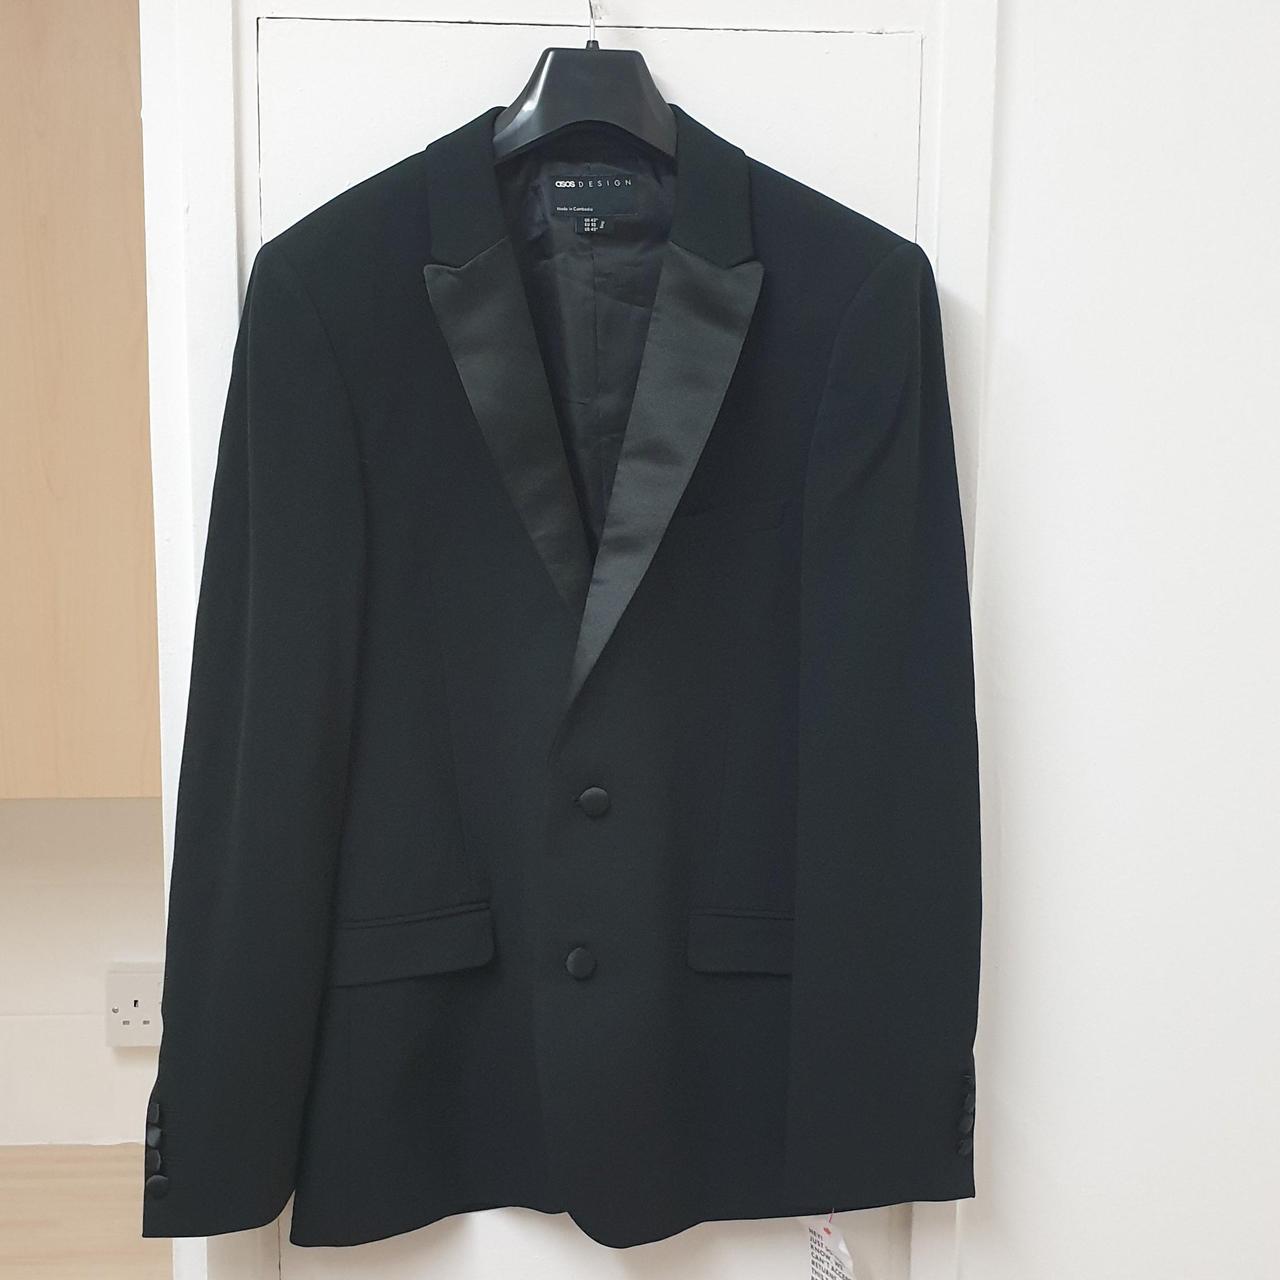 Asos Design Super Skinny Tuxedo In Black Suit... - Depop